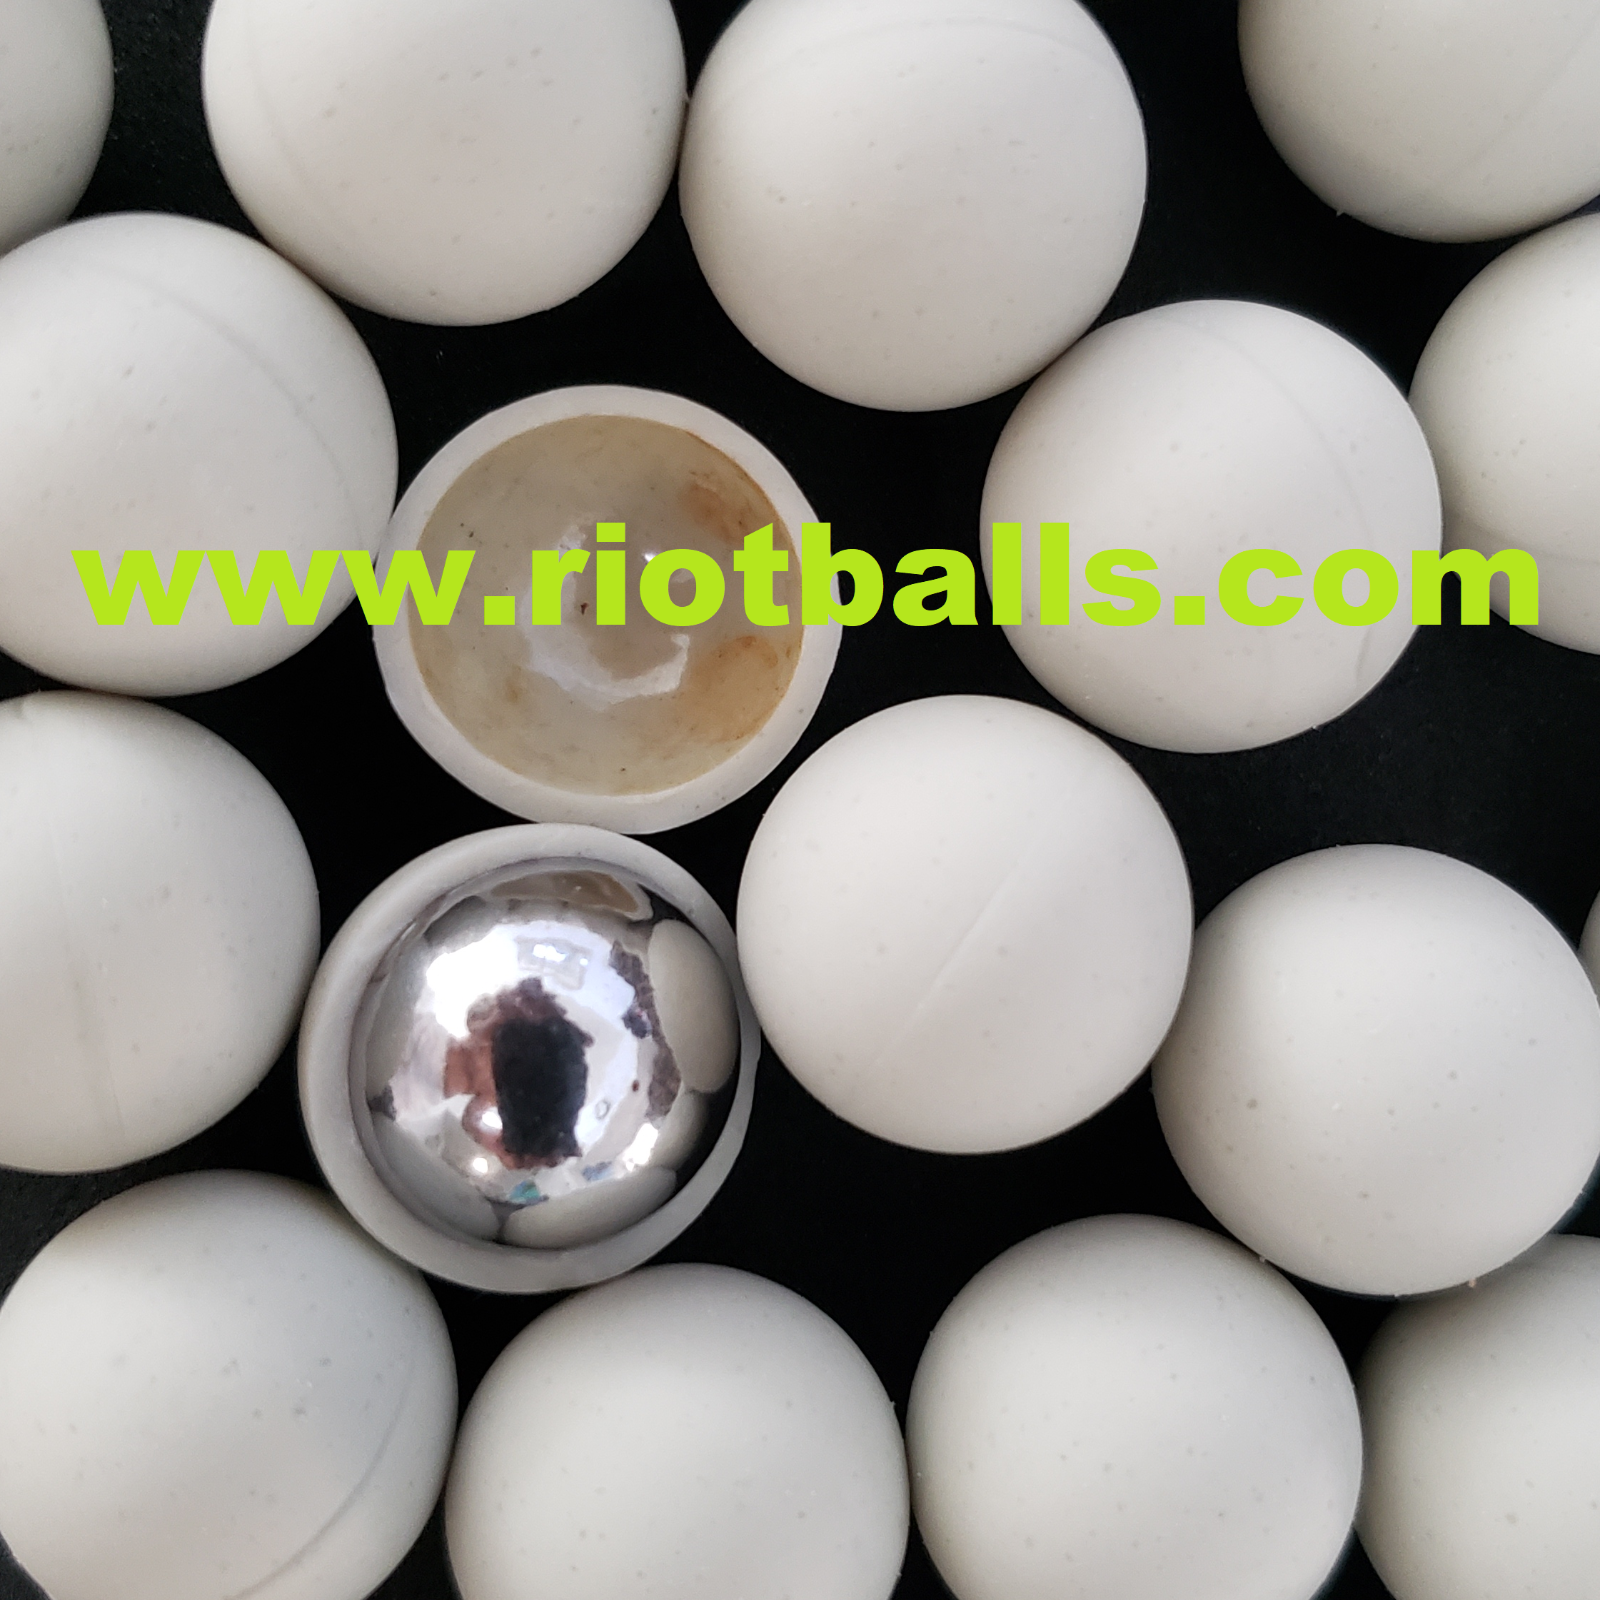 Glass Breaking Balls Paintball .68 Cal Paintballs 25rd Rubber / Metal Balls 12 G